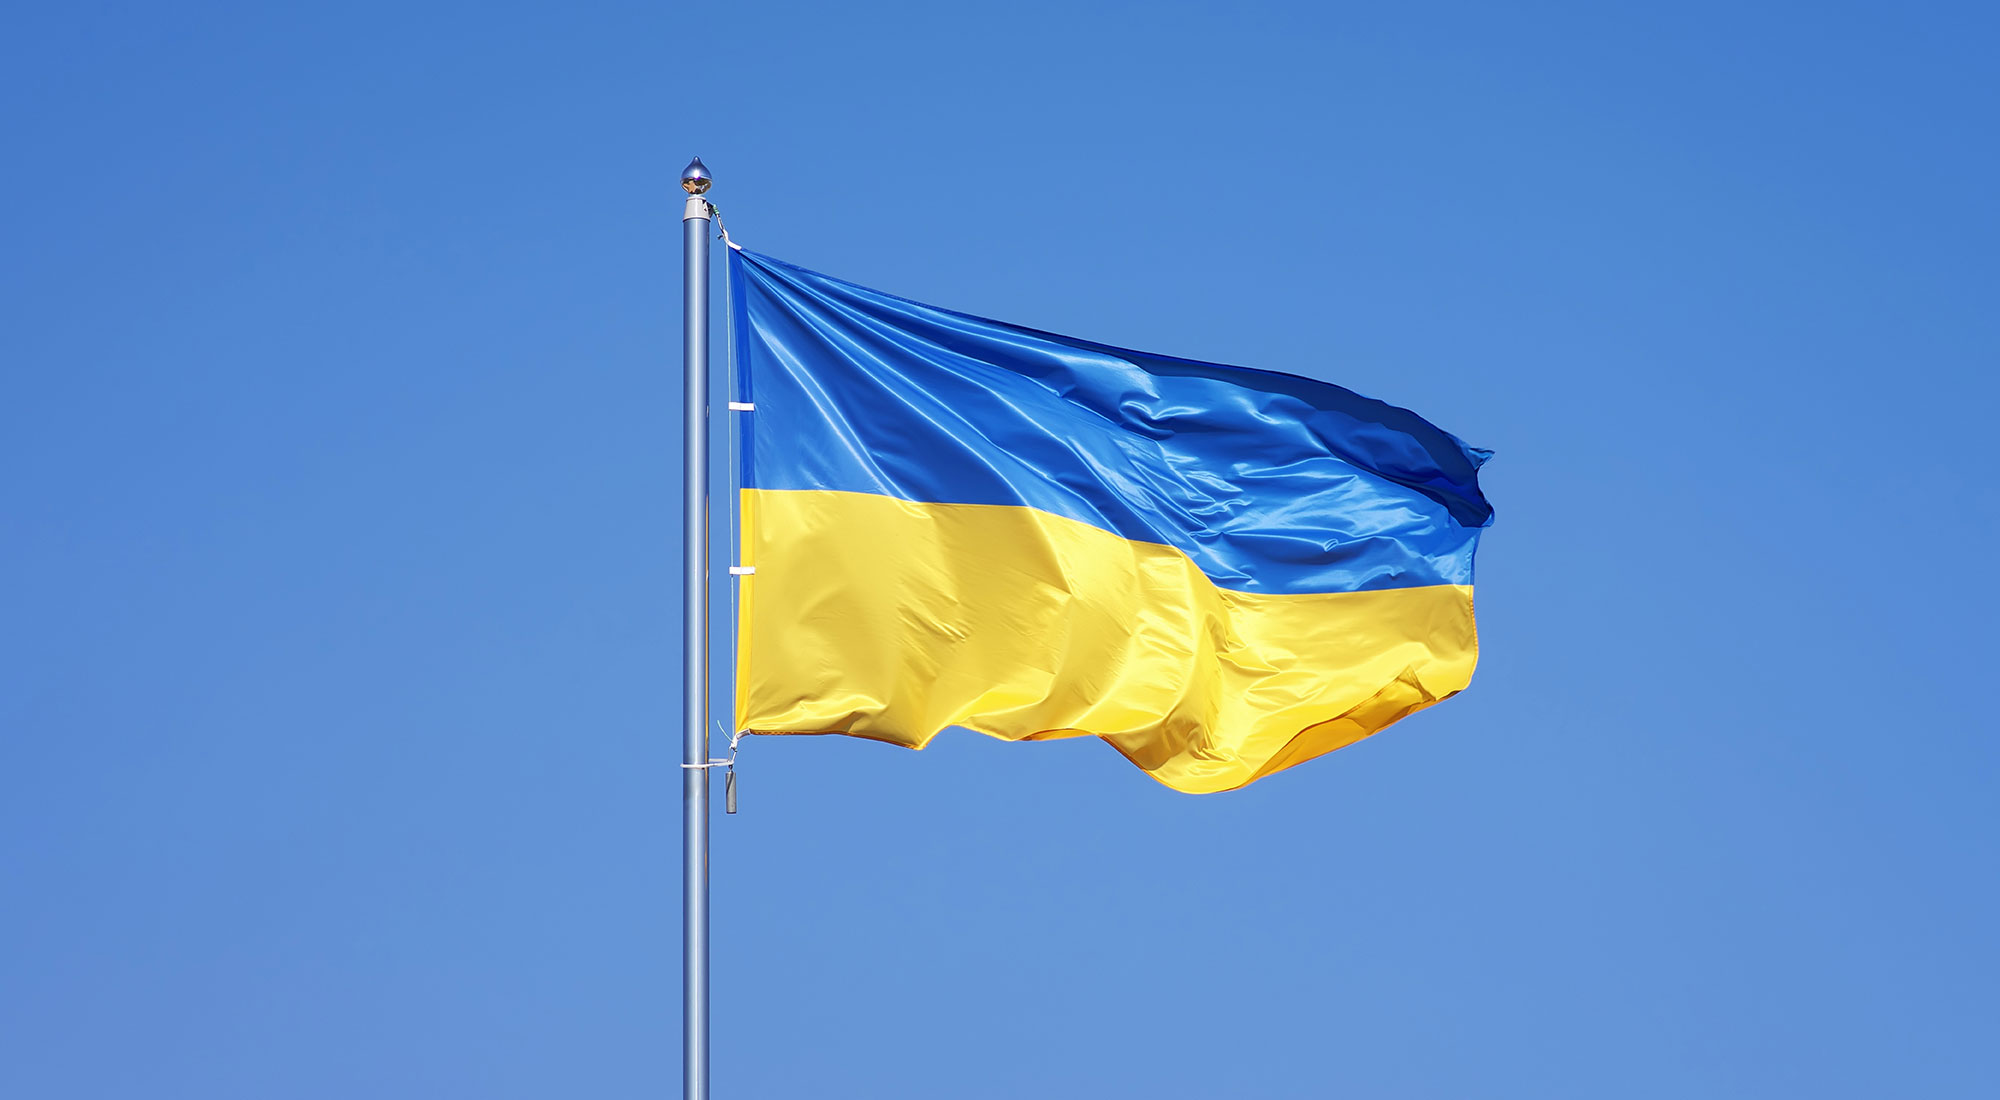 How ukactive members can help Ukraine